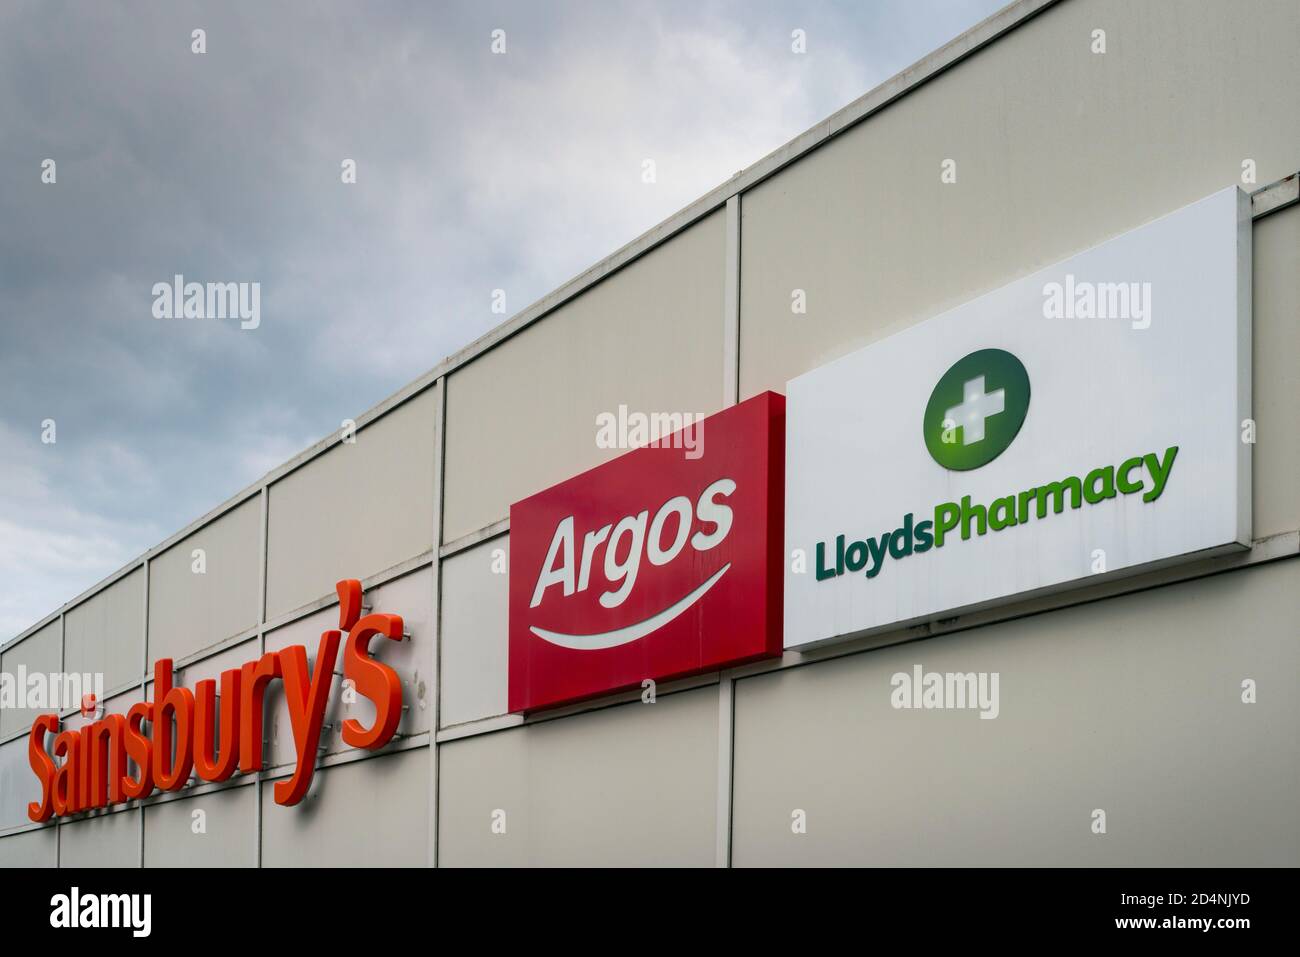 Sainsbury's Supermarkt Gebäude mit Argos und Lloyds Apotheke Schilder & Logos Stockfoto